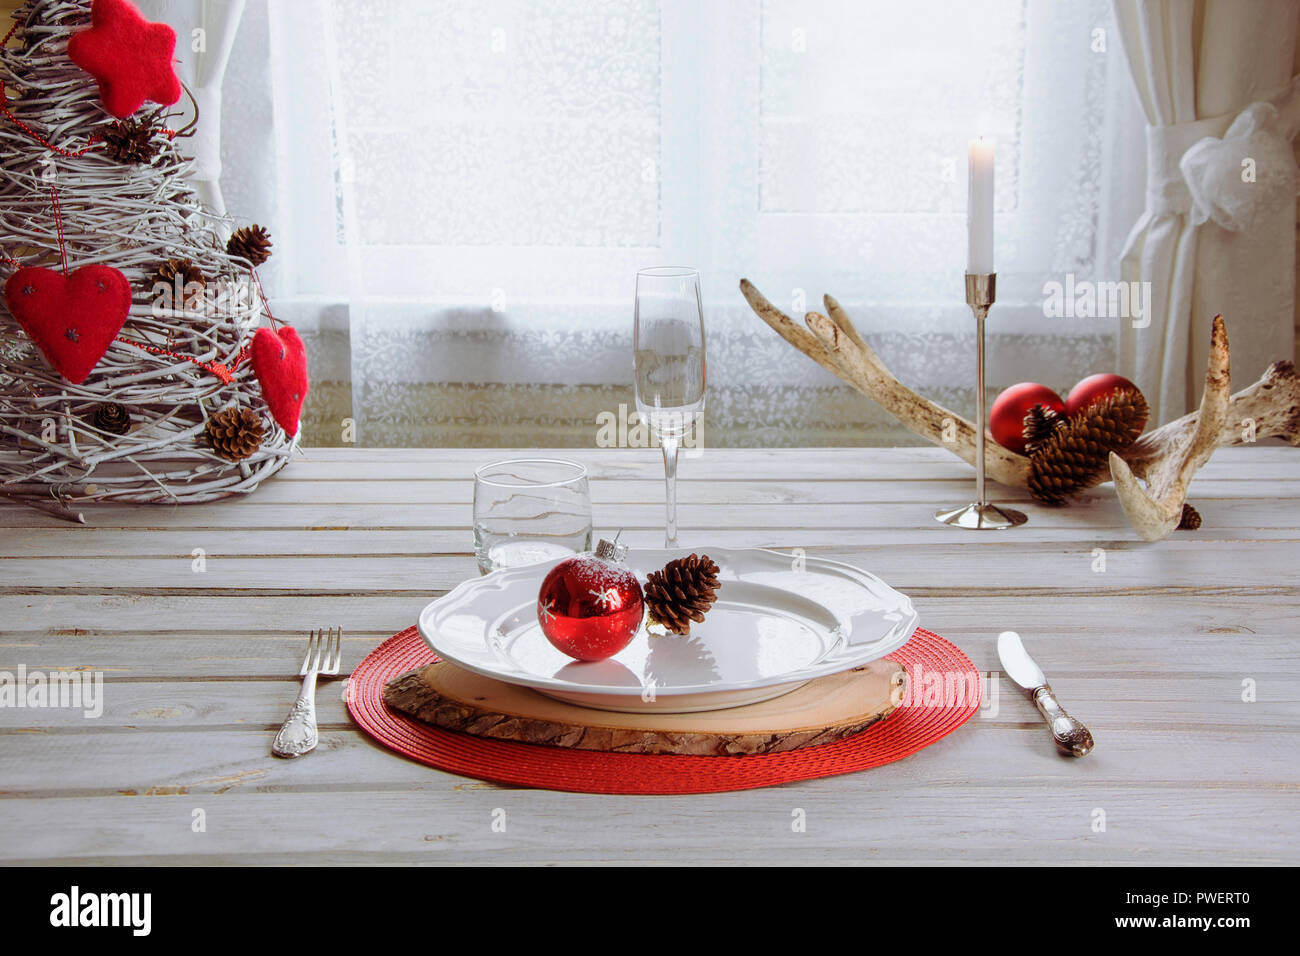 Lieu de Noël blanc avec vaisselle, couverts, vaisselle et décorations rouge blanc sur planche de bois. Chandelier de Noël bougies rouges avec comme décor. Banque D'Images